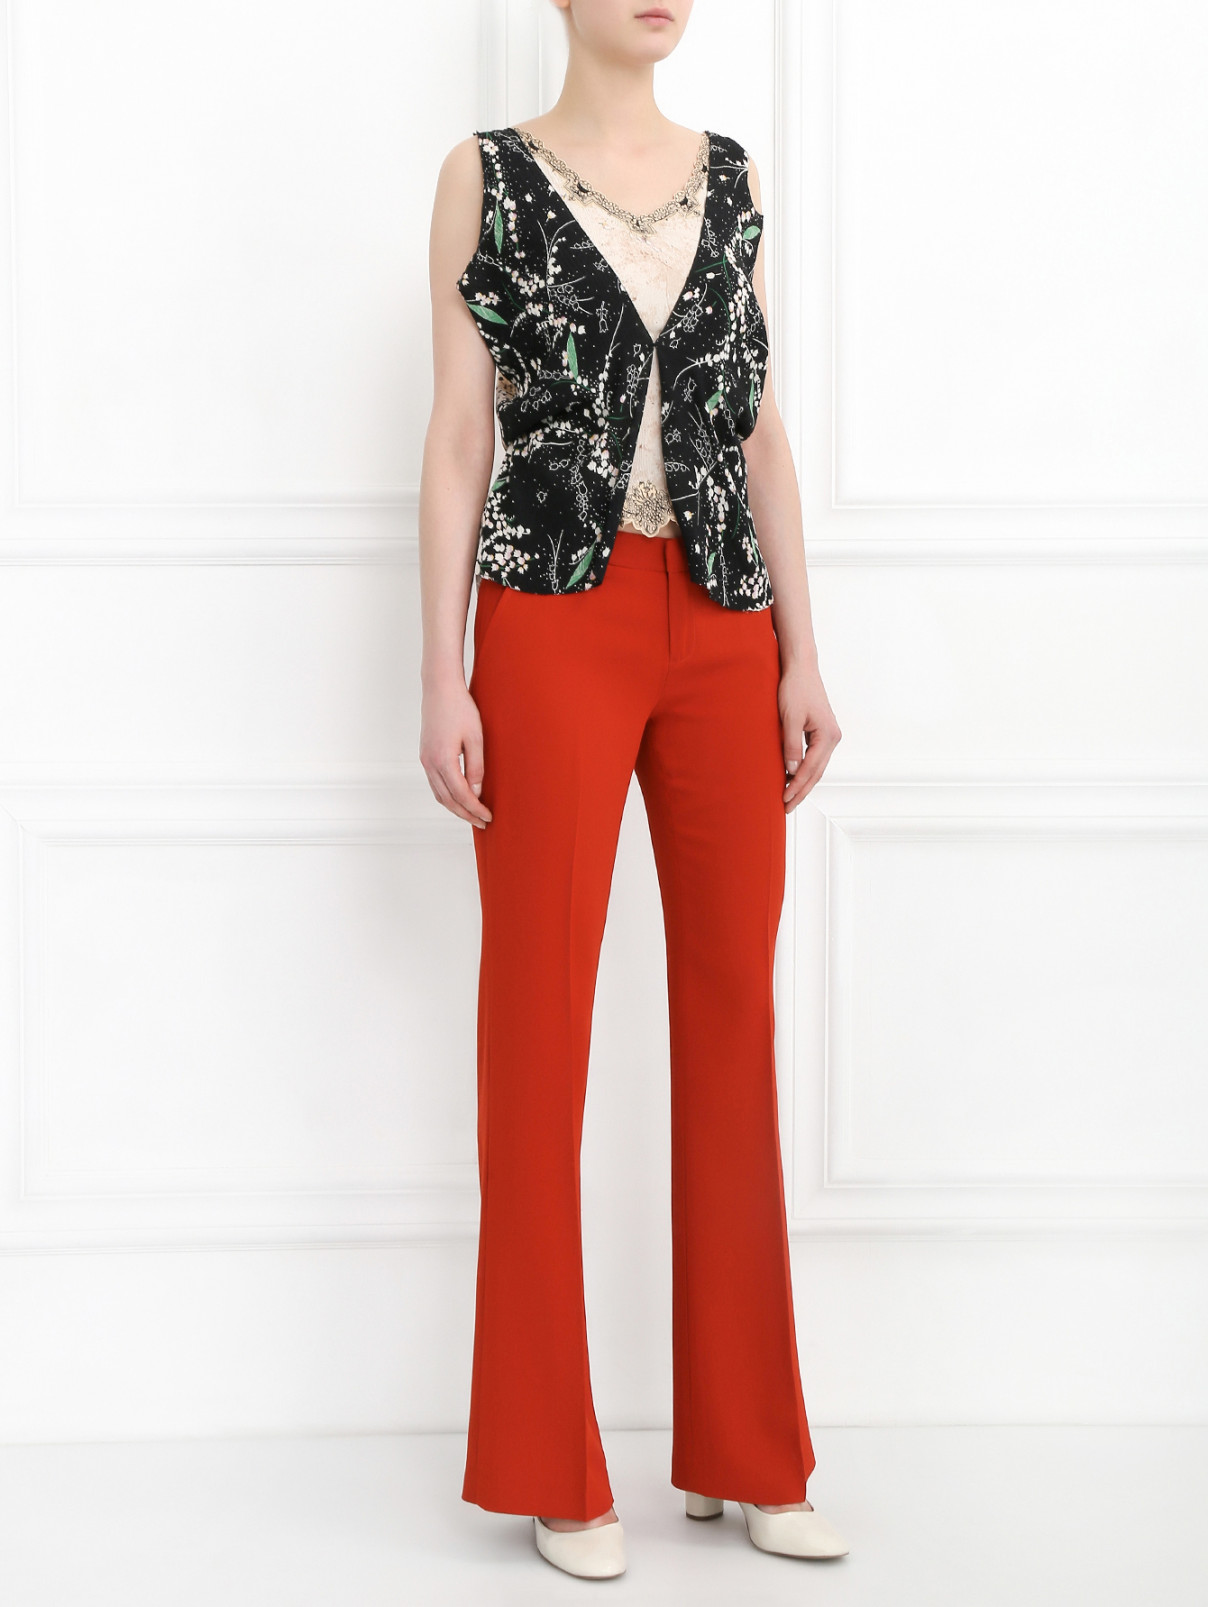 Расклешенные брюки со стрелками Joie  –  Модель Общий вид  – Цвет:  Оранжевый